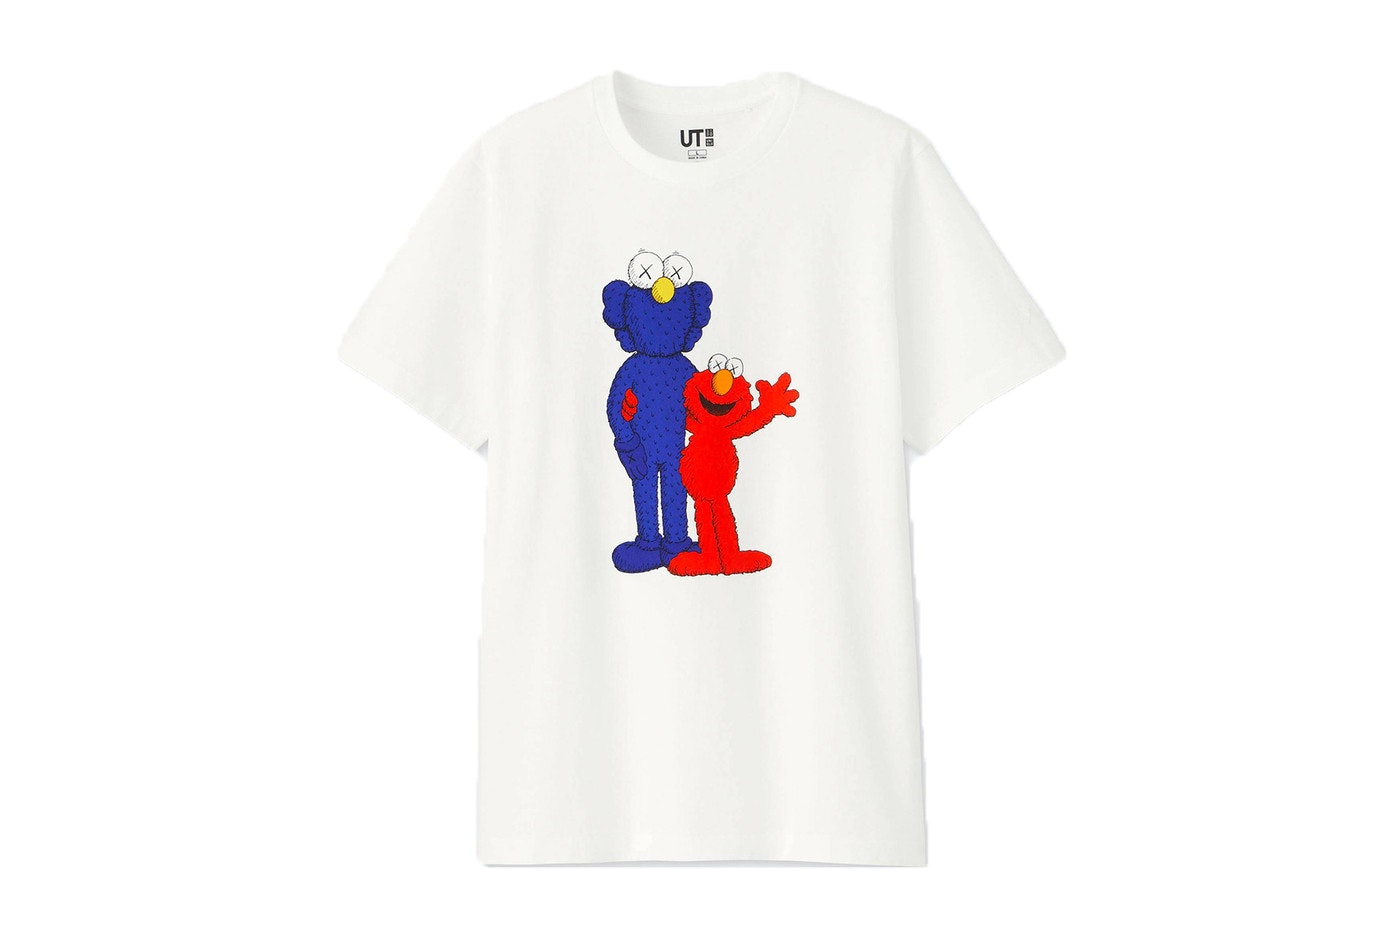 Uniqlo x Kaws x Sesame Street Mens Fashion Tops  Sets Tshirts  Polo  Shirts on Carousell